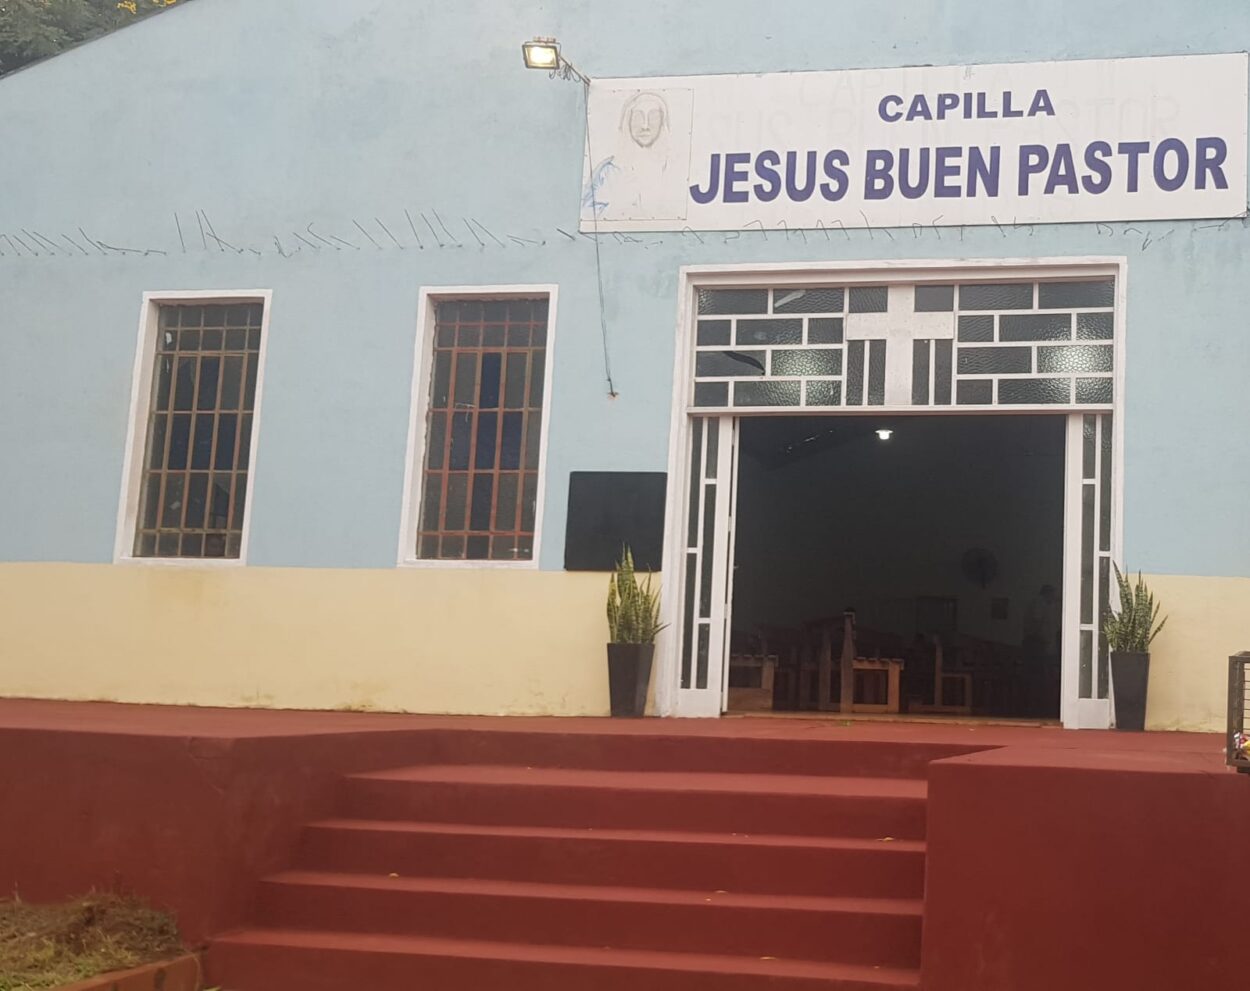 Capilla “Jesús Buen Pastor” celebrará su fiesta patronal este domingo 21 imagen-18